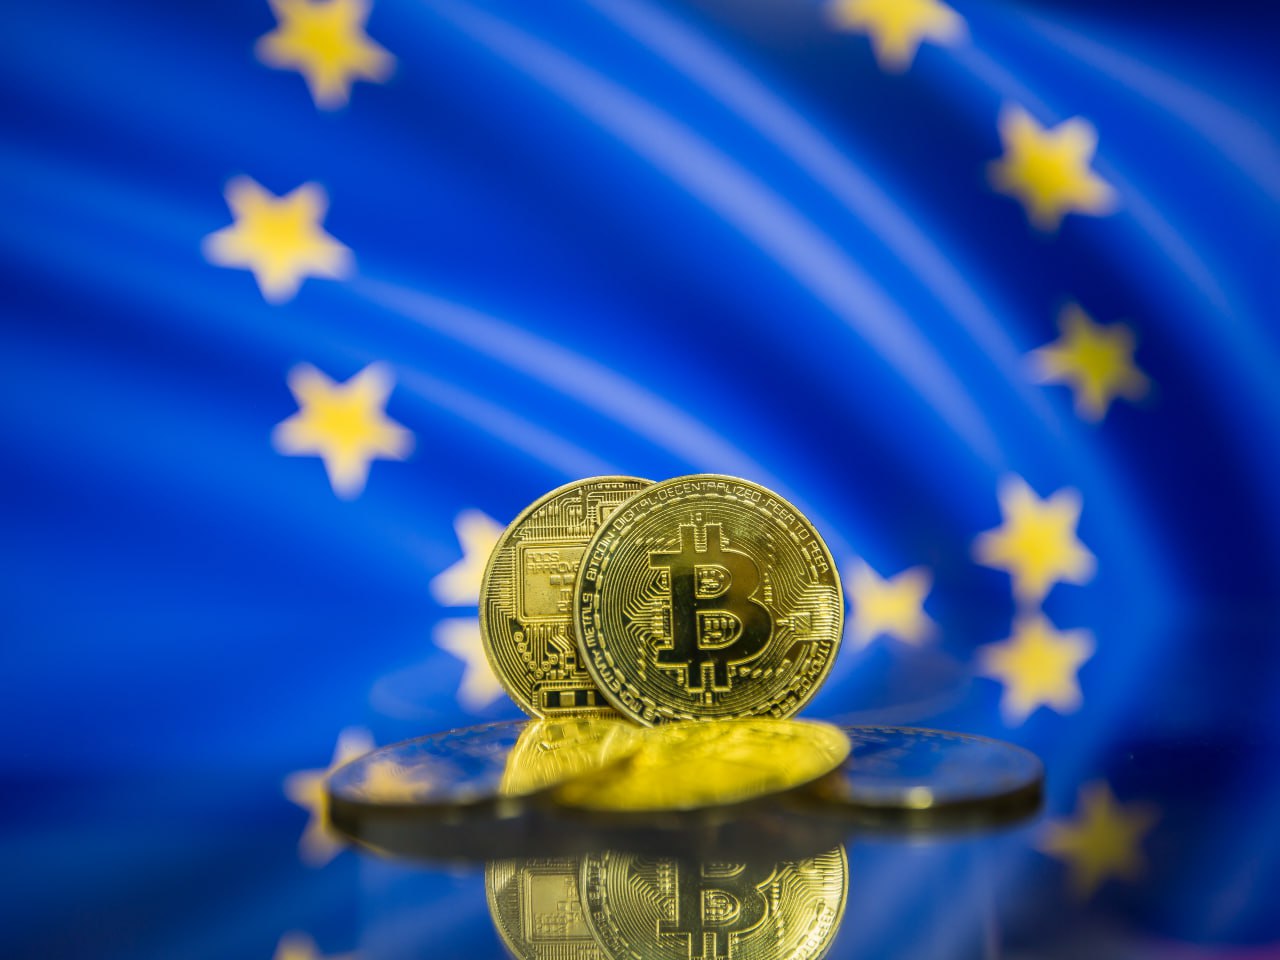 crypto adoption in Europe